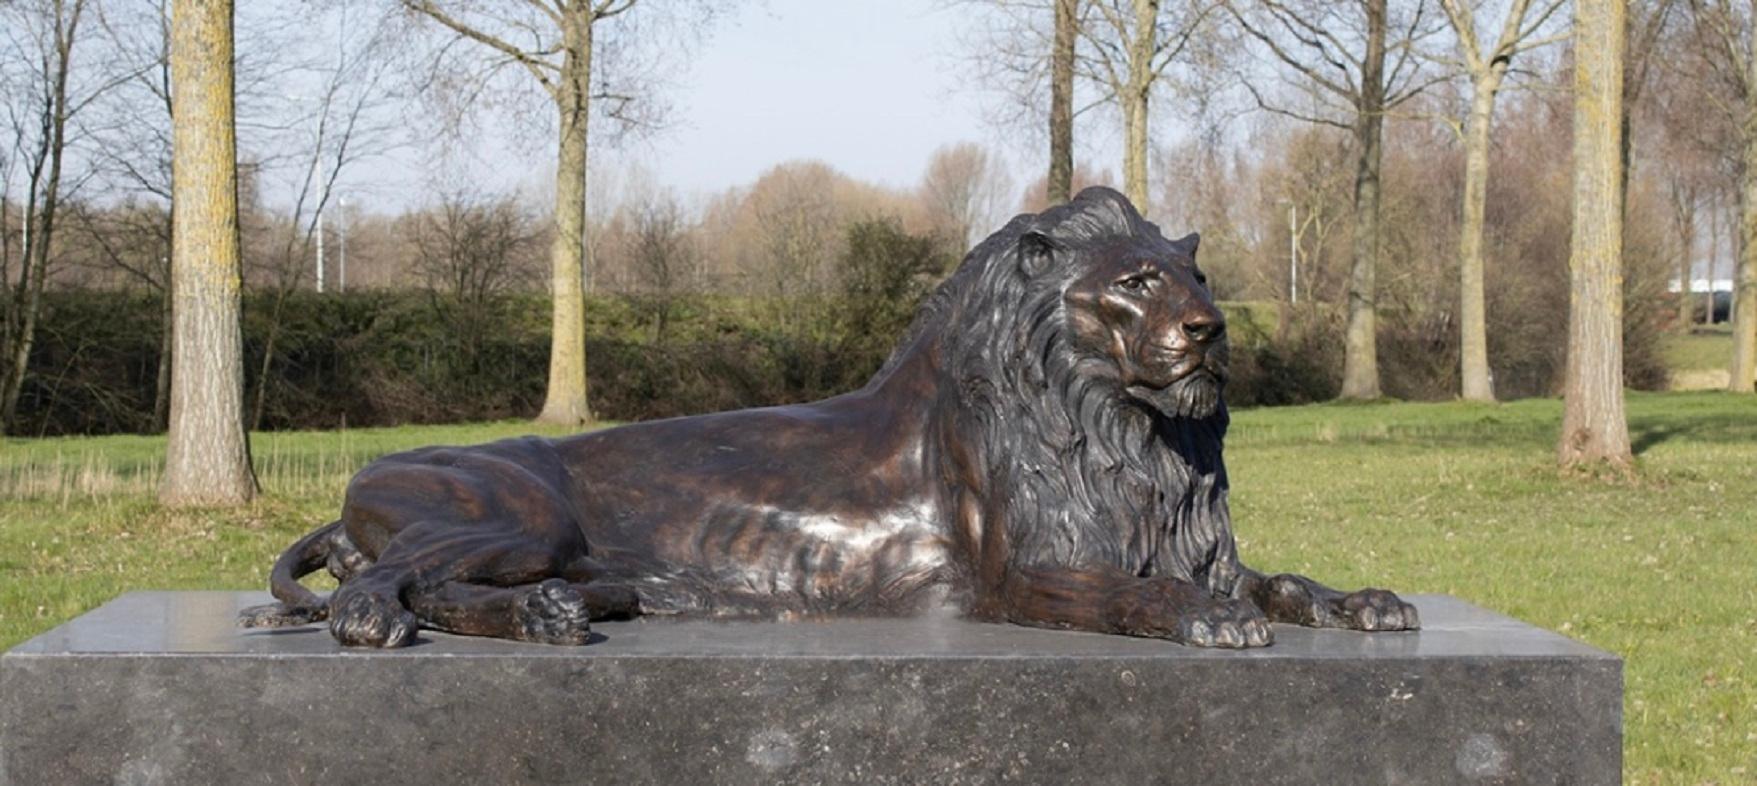 Figurative Sculpture Chris Tap - Sculpture de lion couché sur duvet en bronze - Grande statue - Réalisme néerlandais